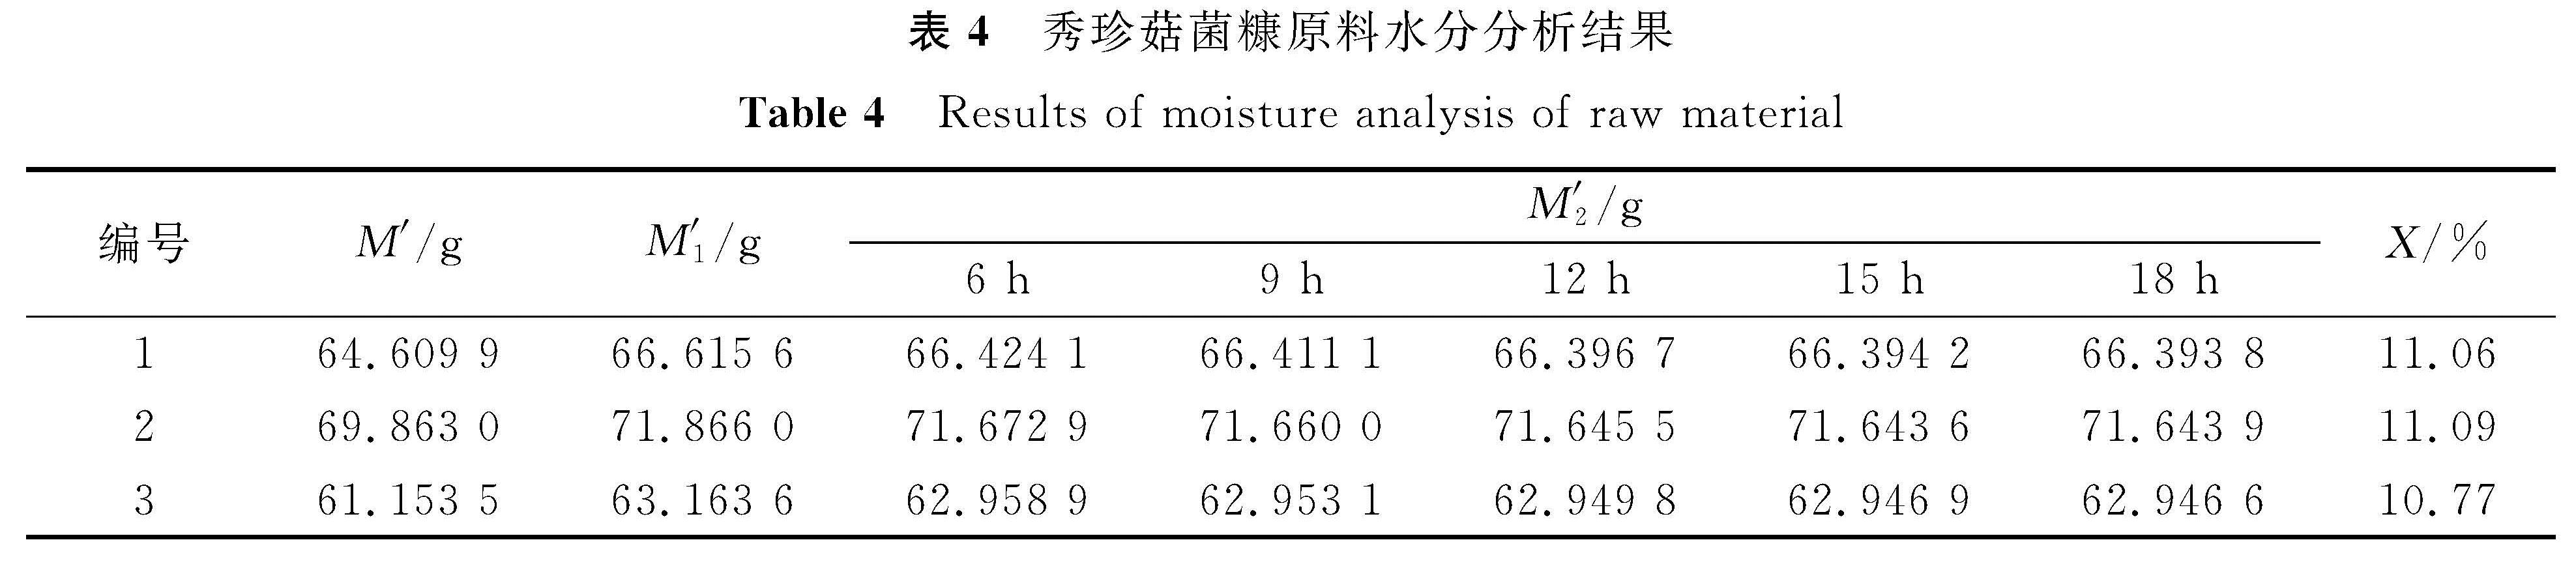 表4 秀珍菇菌糠原料水分分析结果<br/>Table 4 Results of moisture analysis of raw material